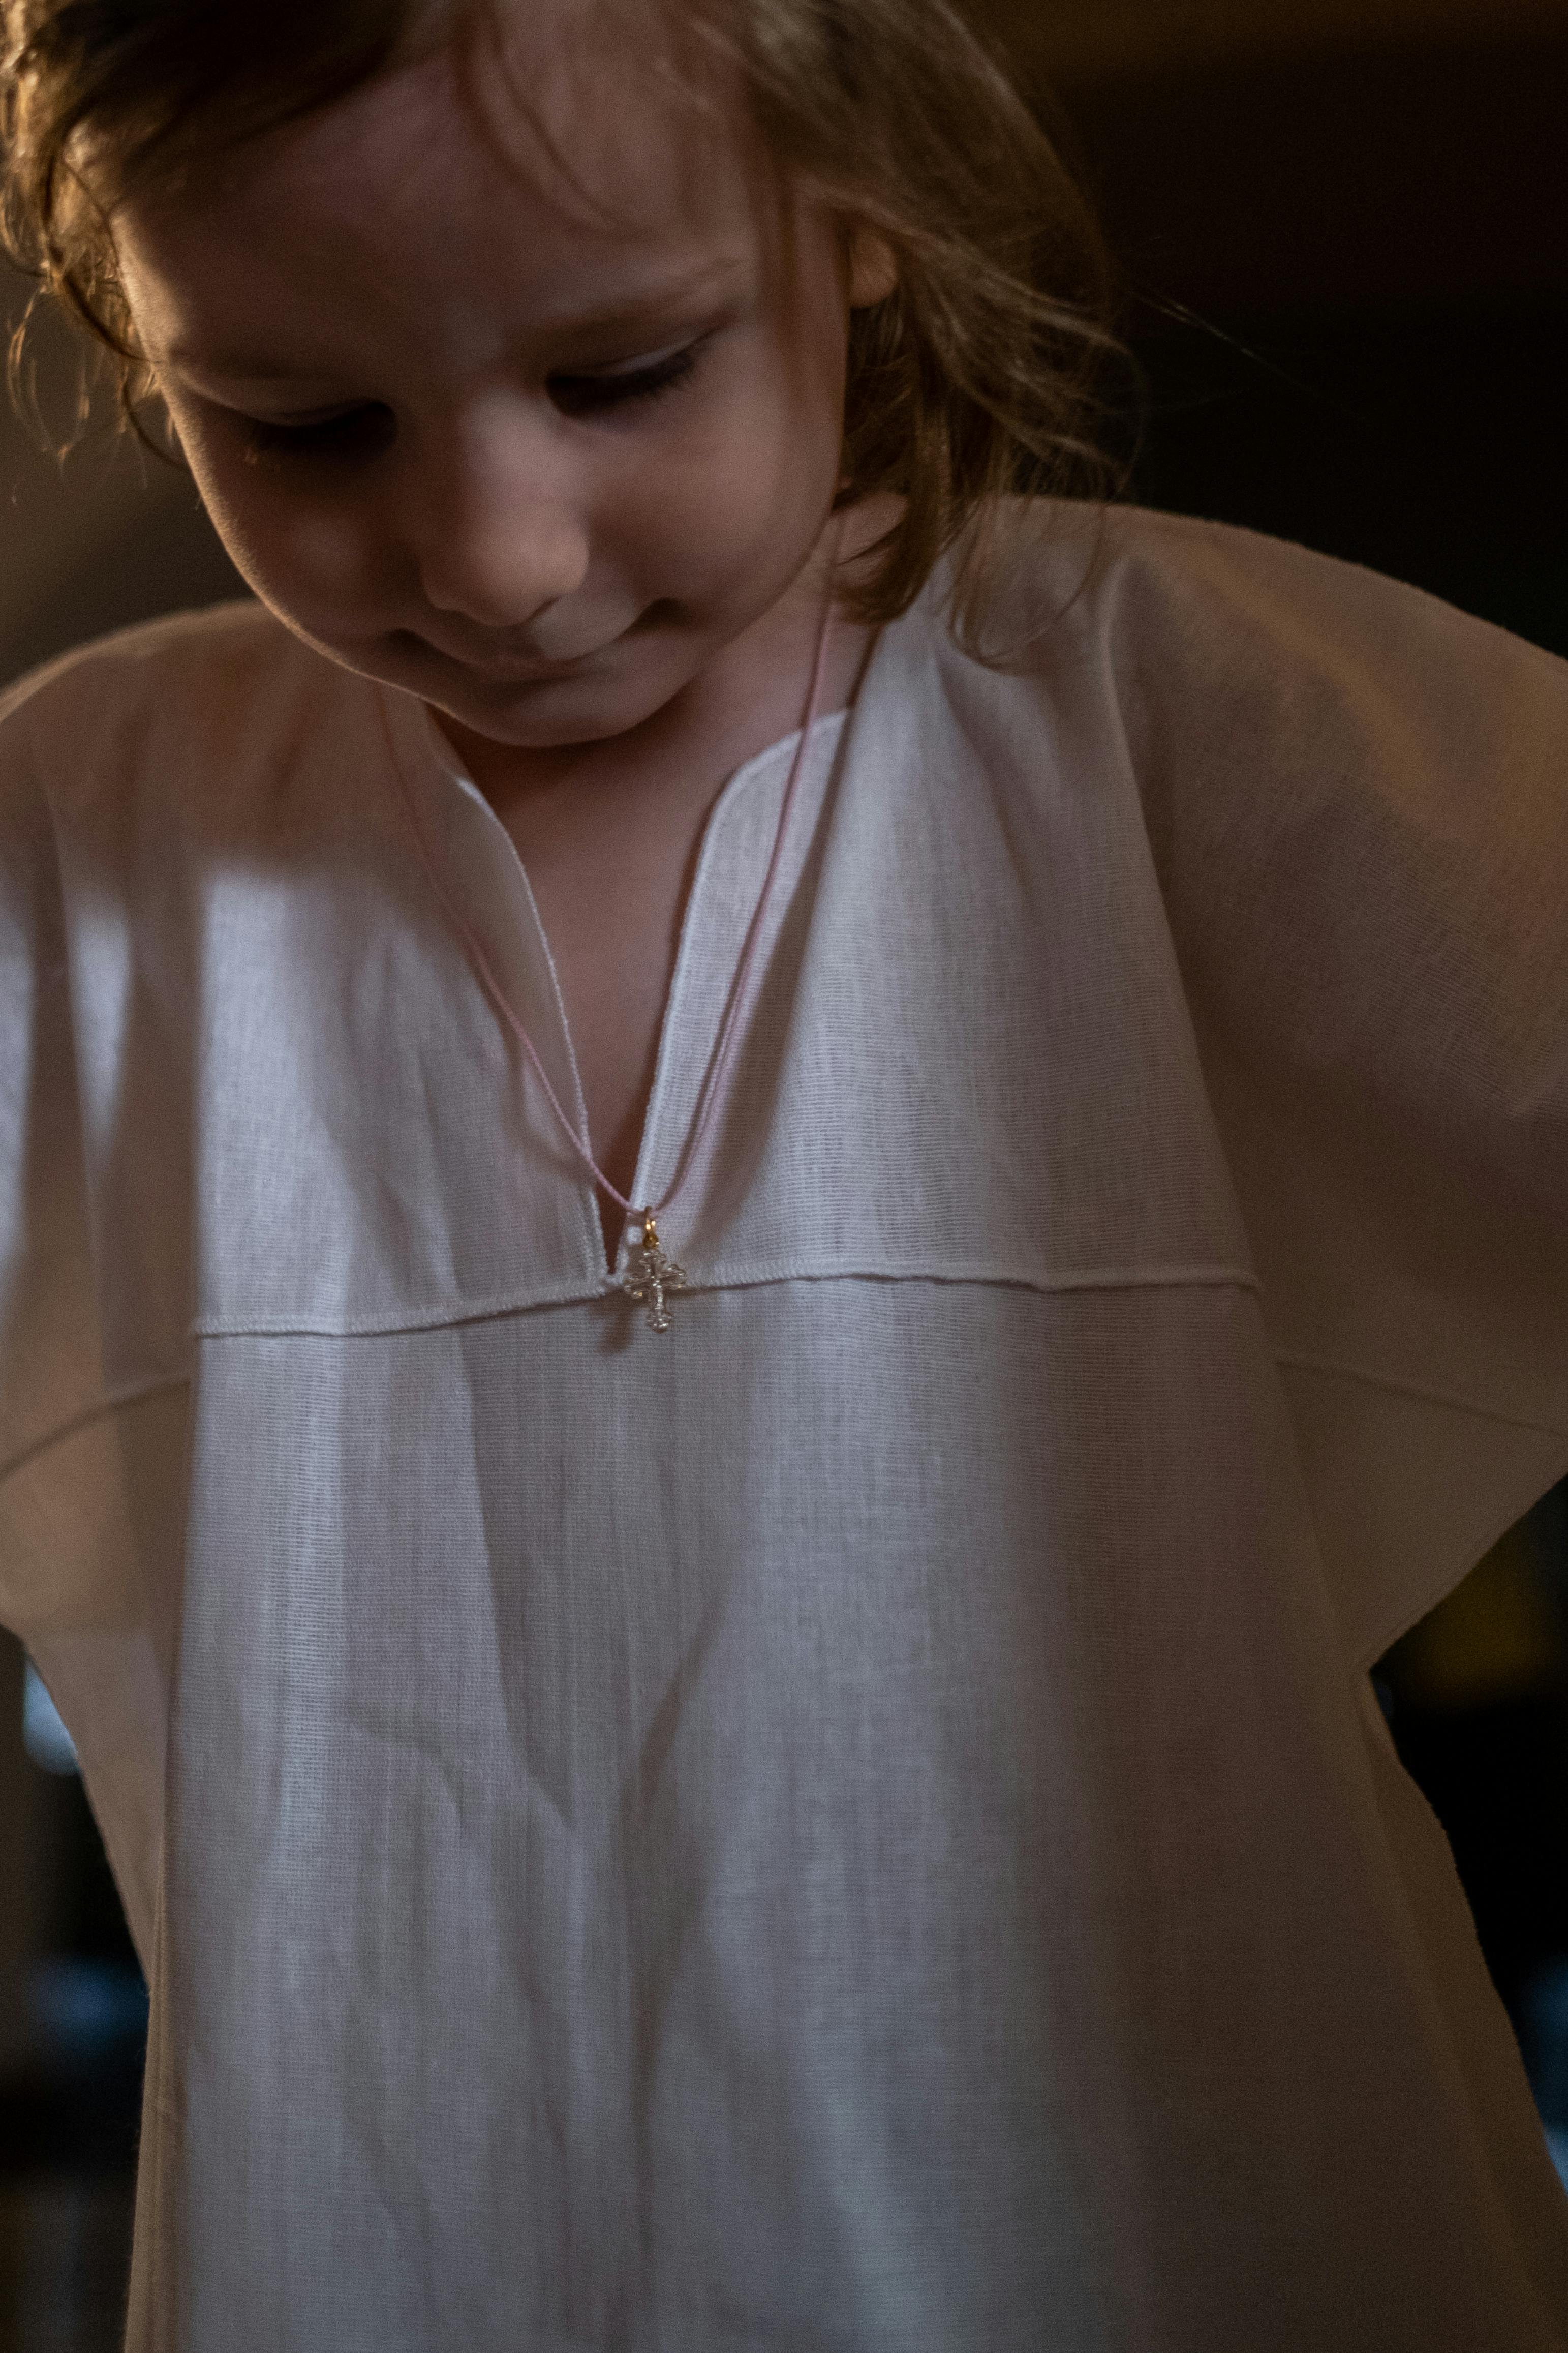 Ein kleines Mädchen in einem weißen Kleid schaut nach unten | Quelle: Pexels